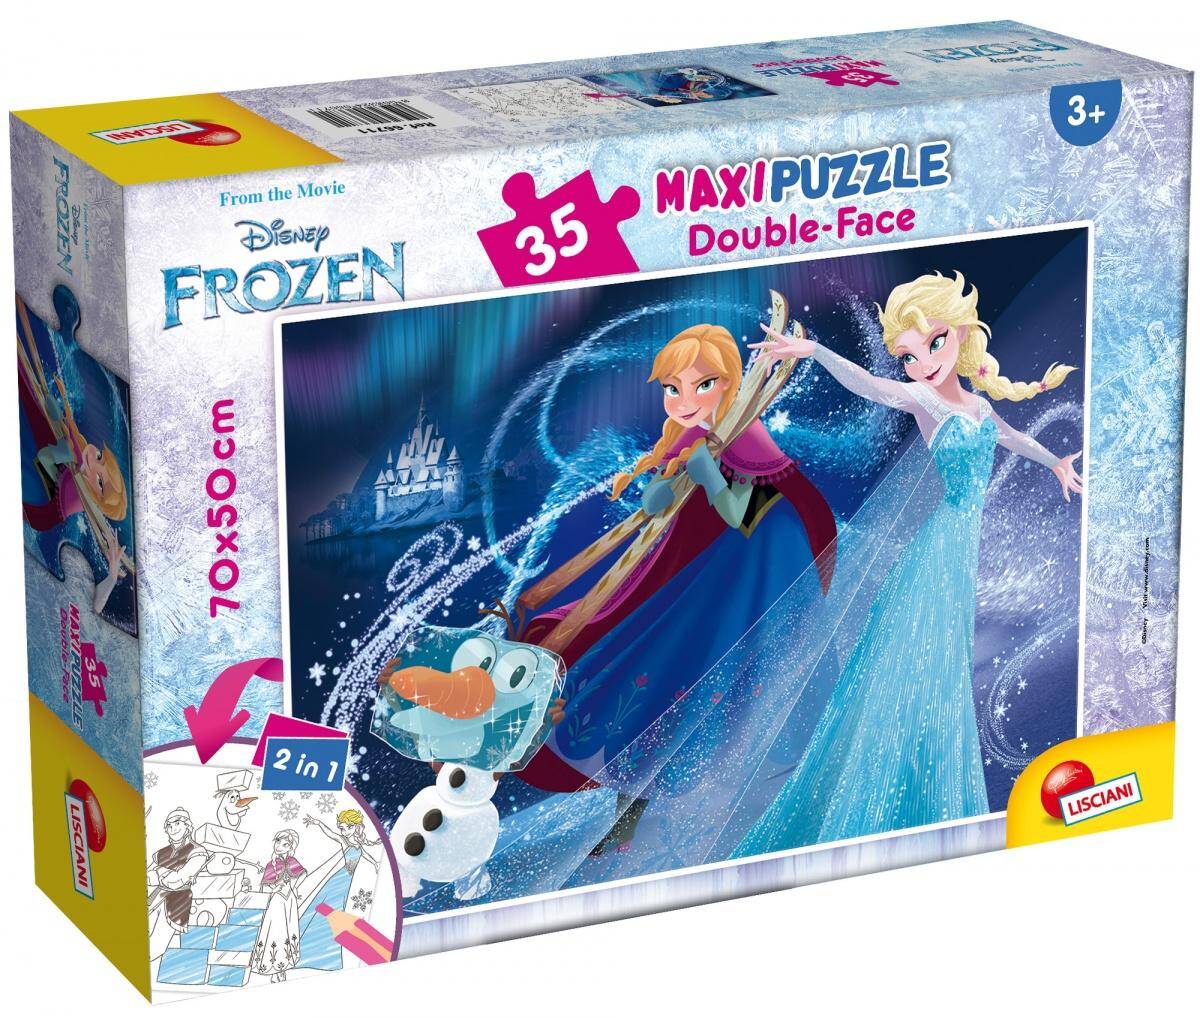 Puzzle 35 maxi double-face Frozen 304-66711